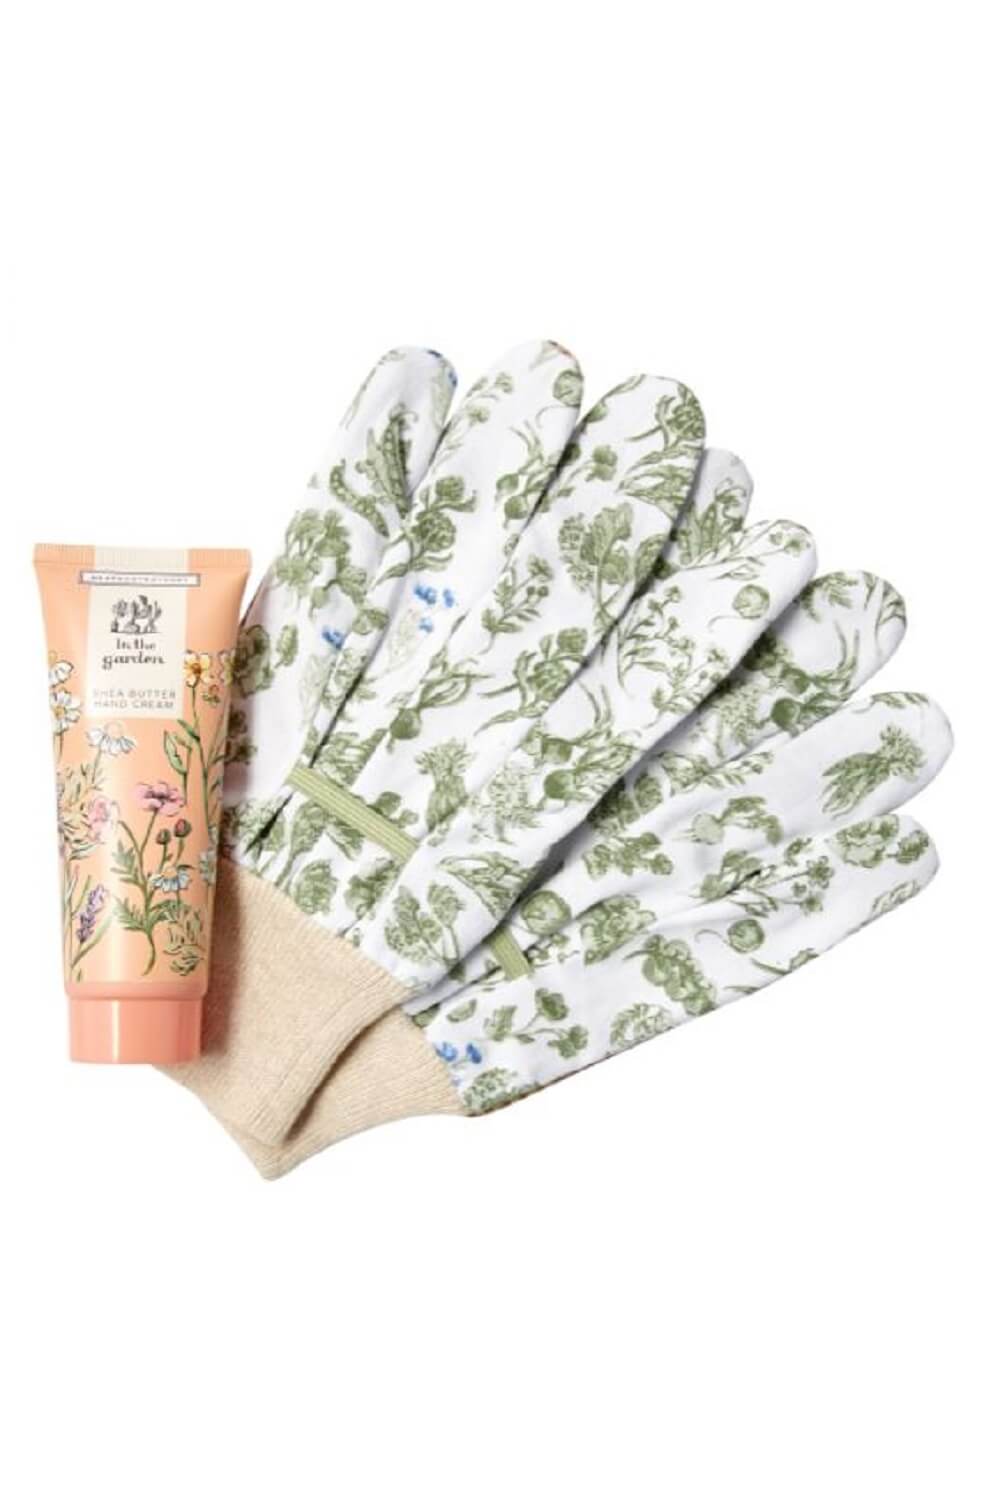 Heathcote & Ivory - In The Garden Gloves & Hand Cream Set